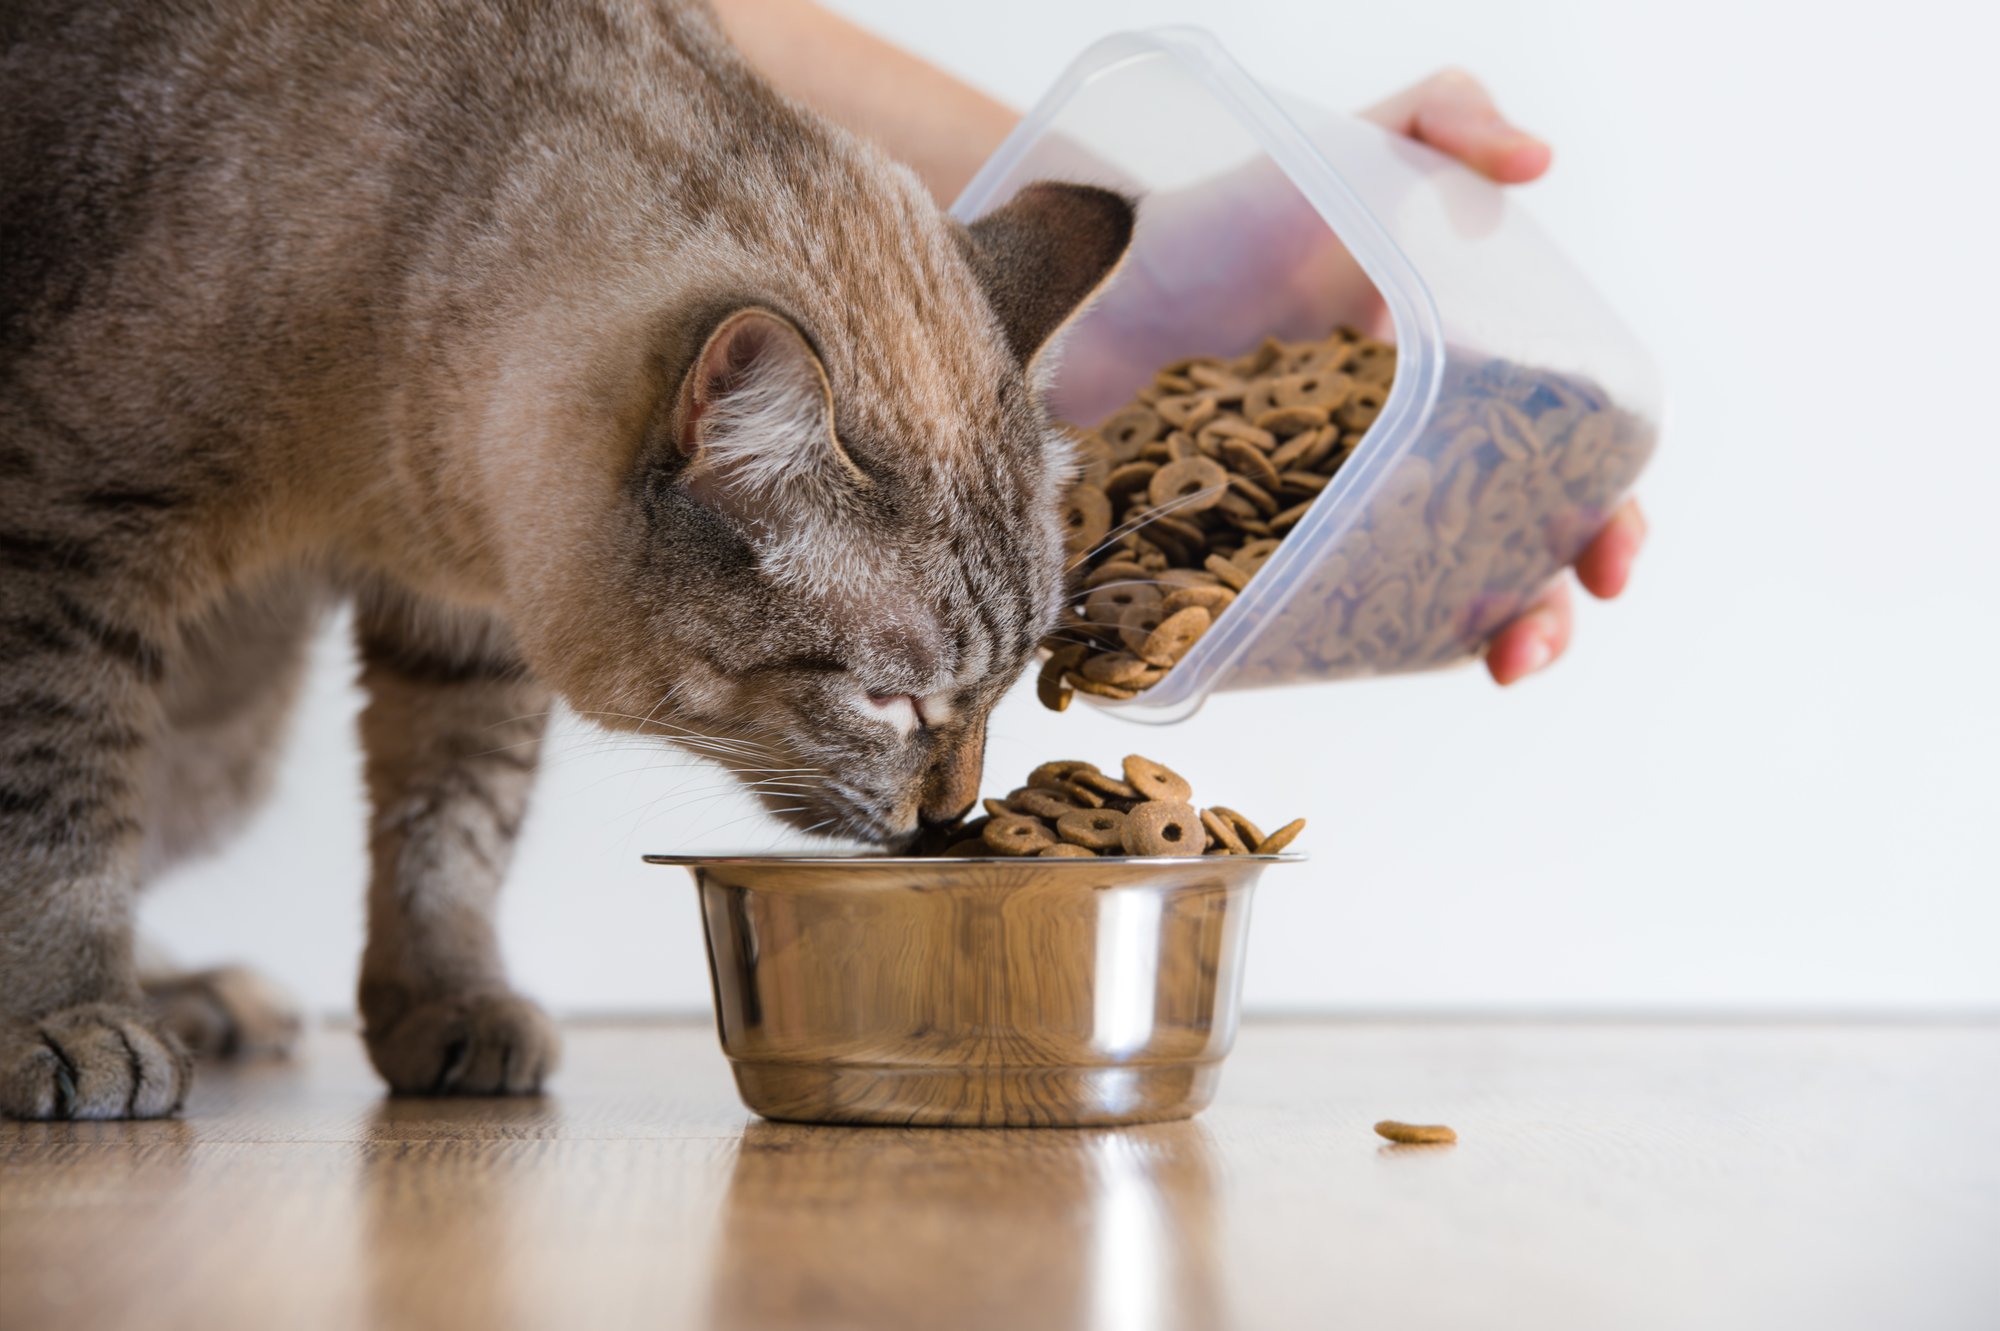 How often should I feed my cat?